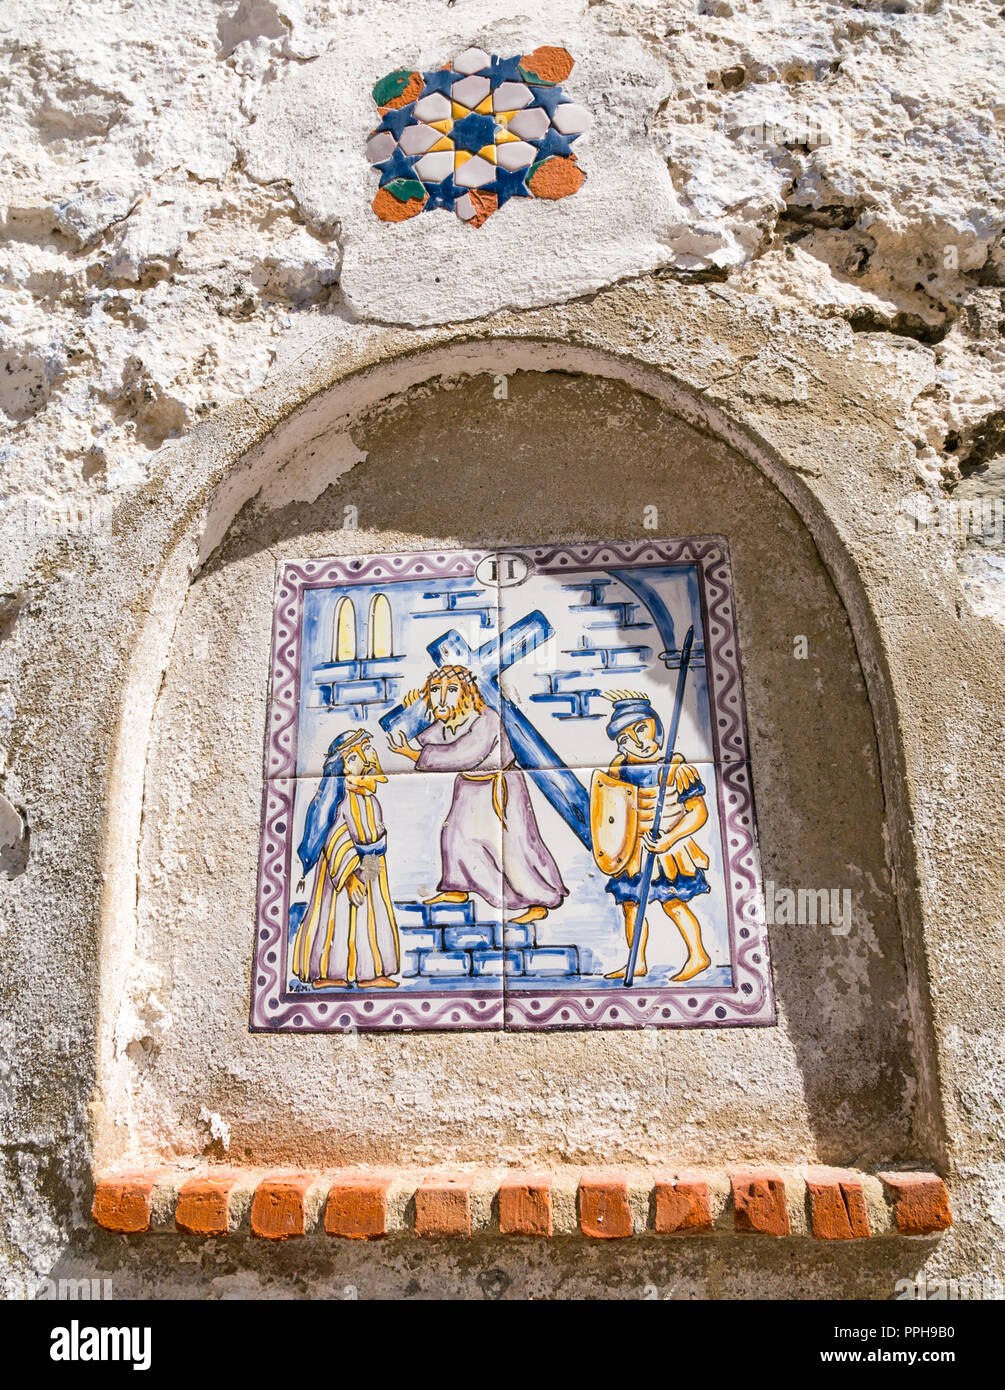 Carreaux de céramique colorée sur le mur représentant la foi catholique deuxième station de la croix, Salares, Axarquía, Andalousie, Espagne Banque D'Images